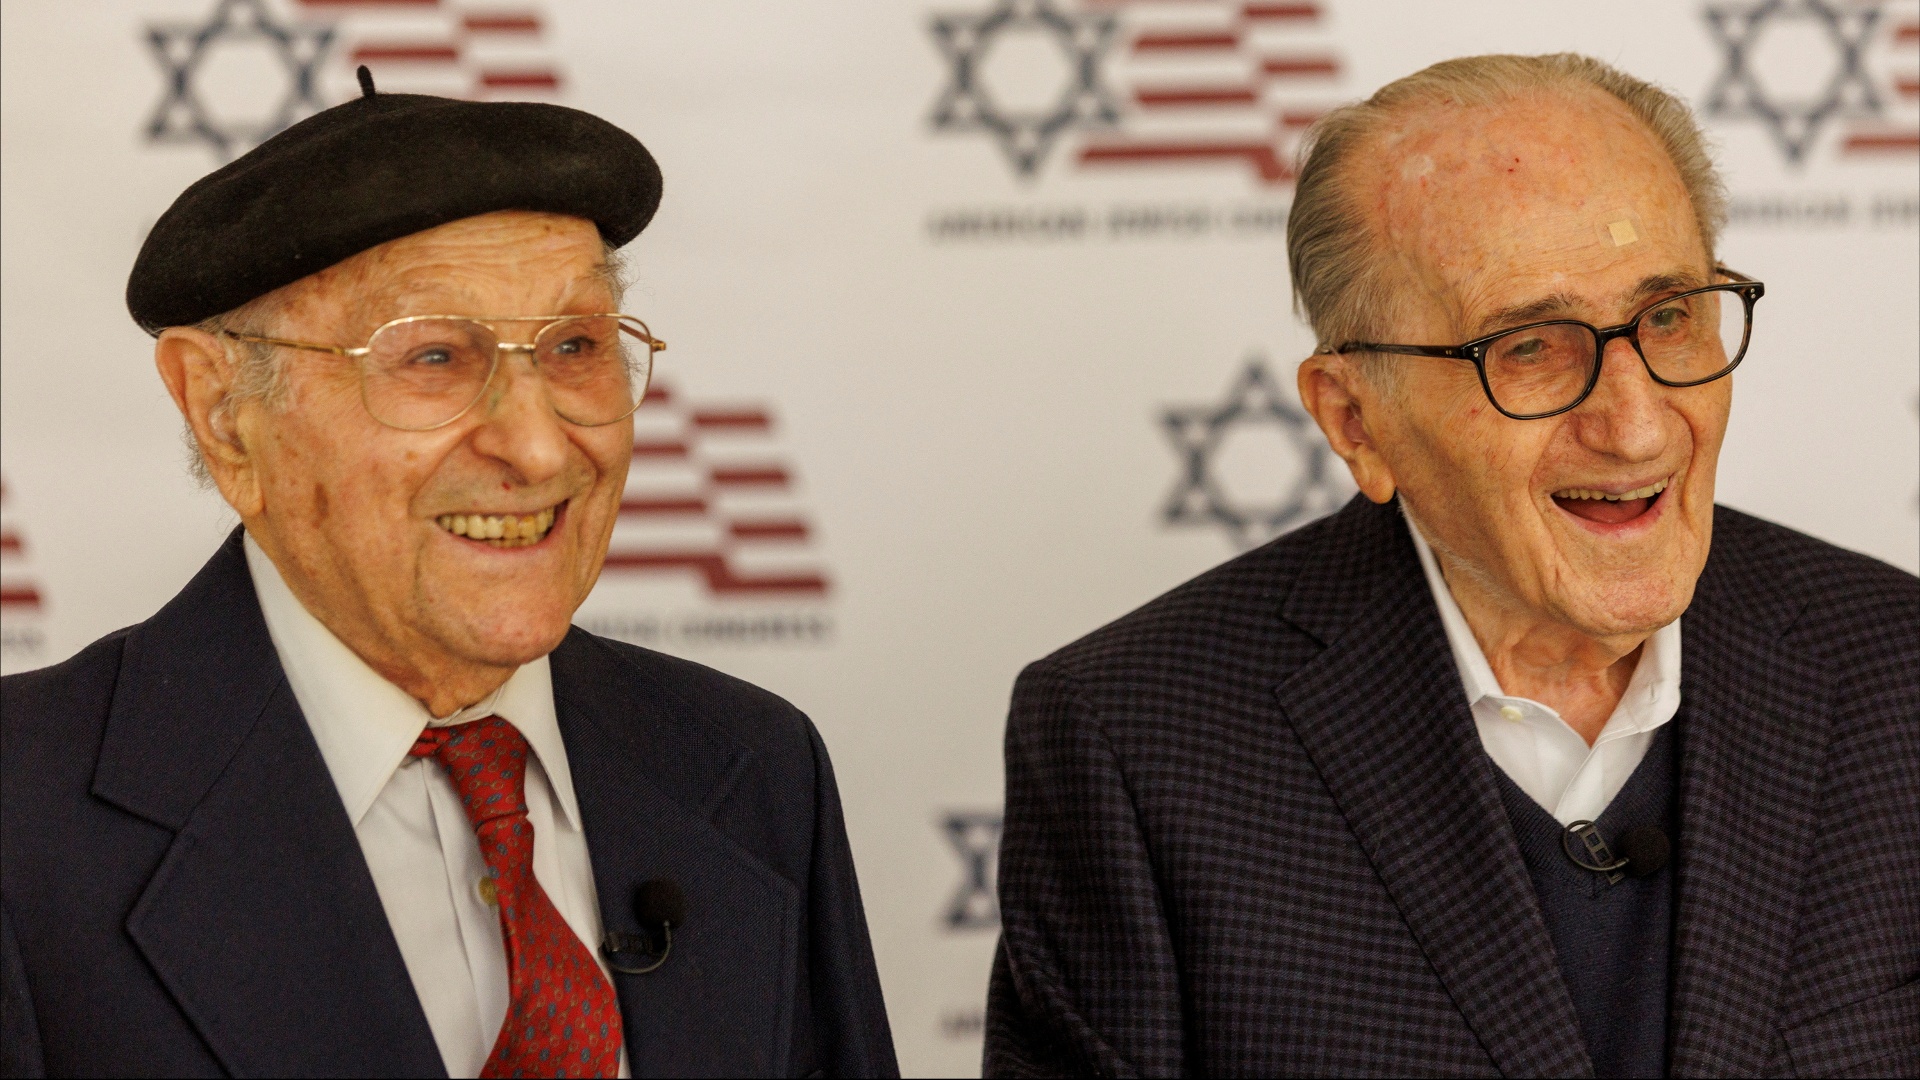 Двое выживших в Холокосте снова встретились через 80 лет